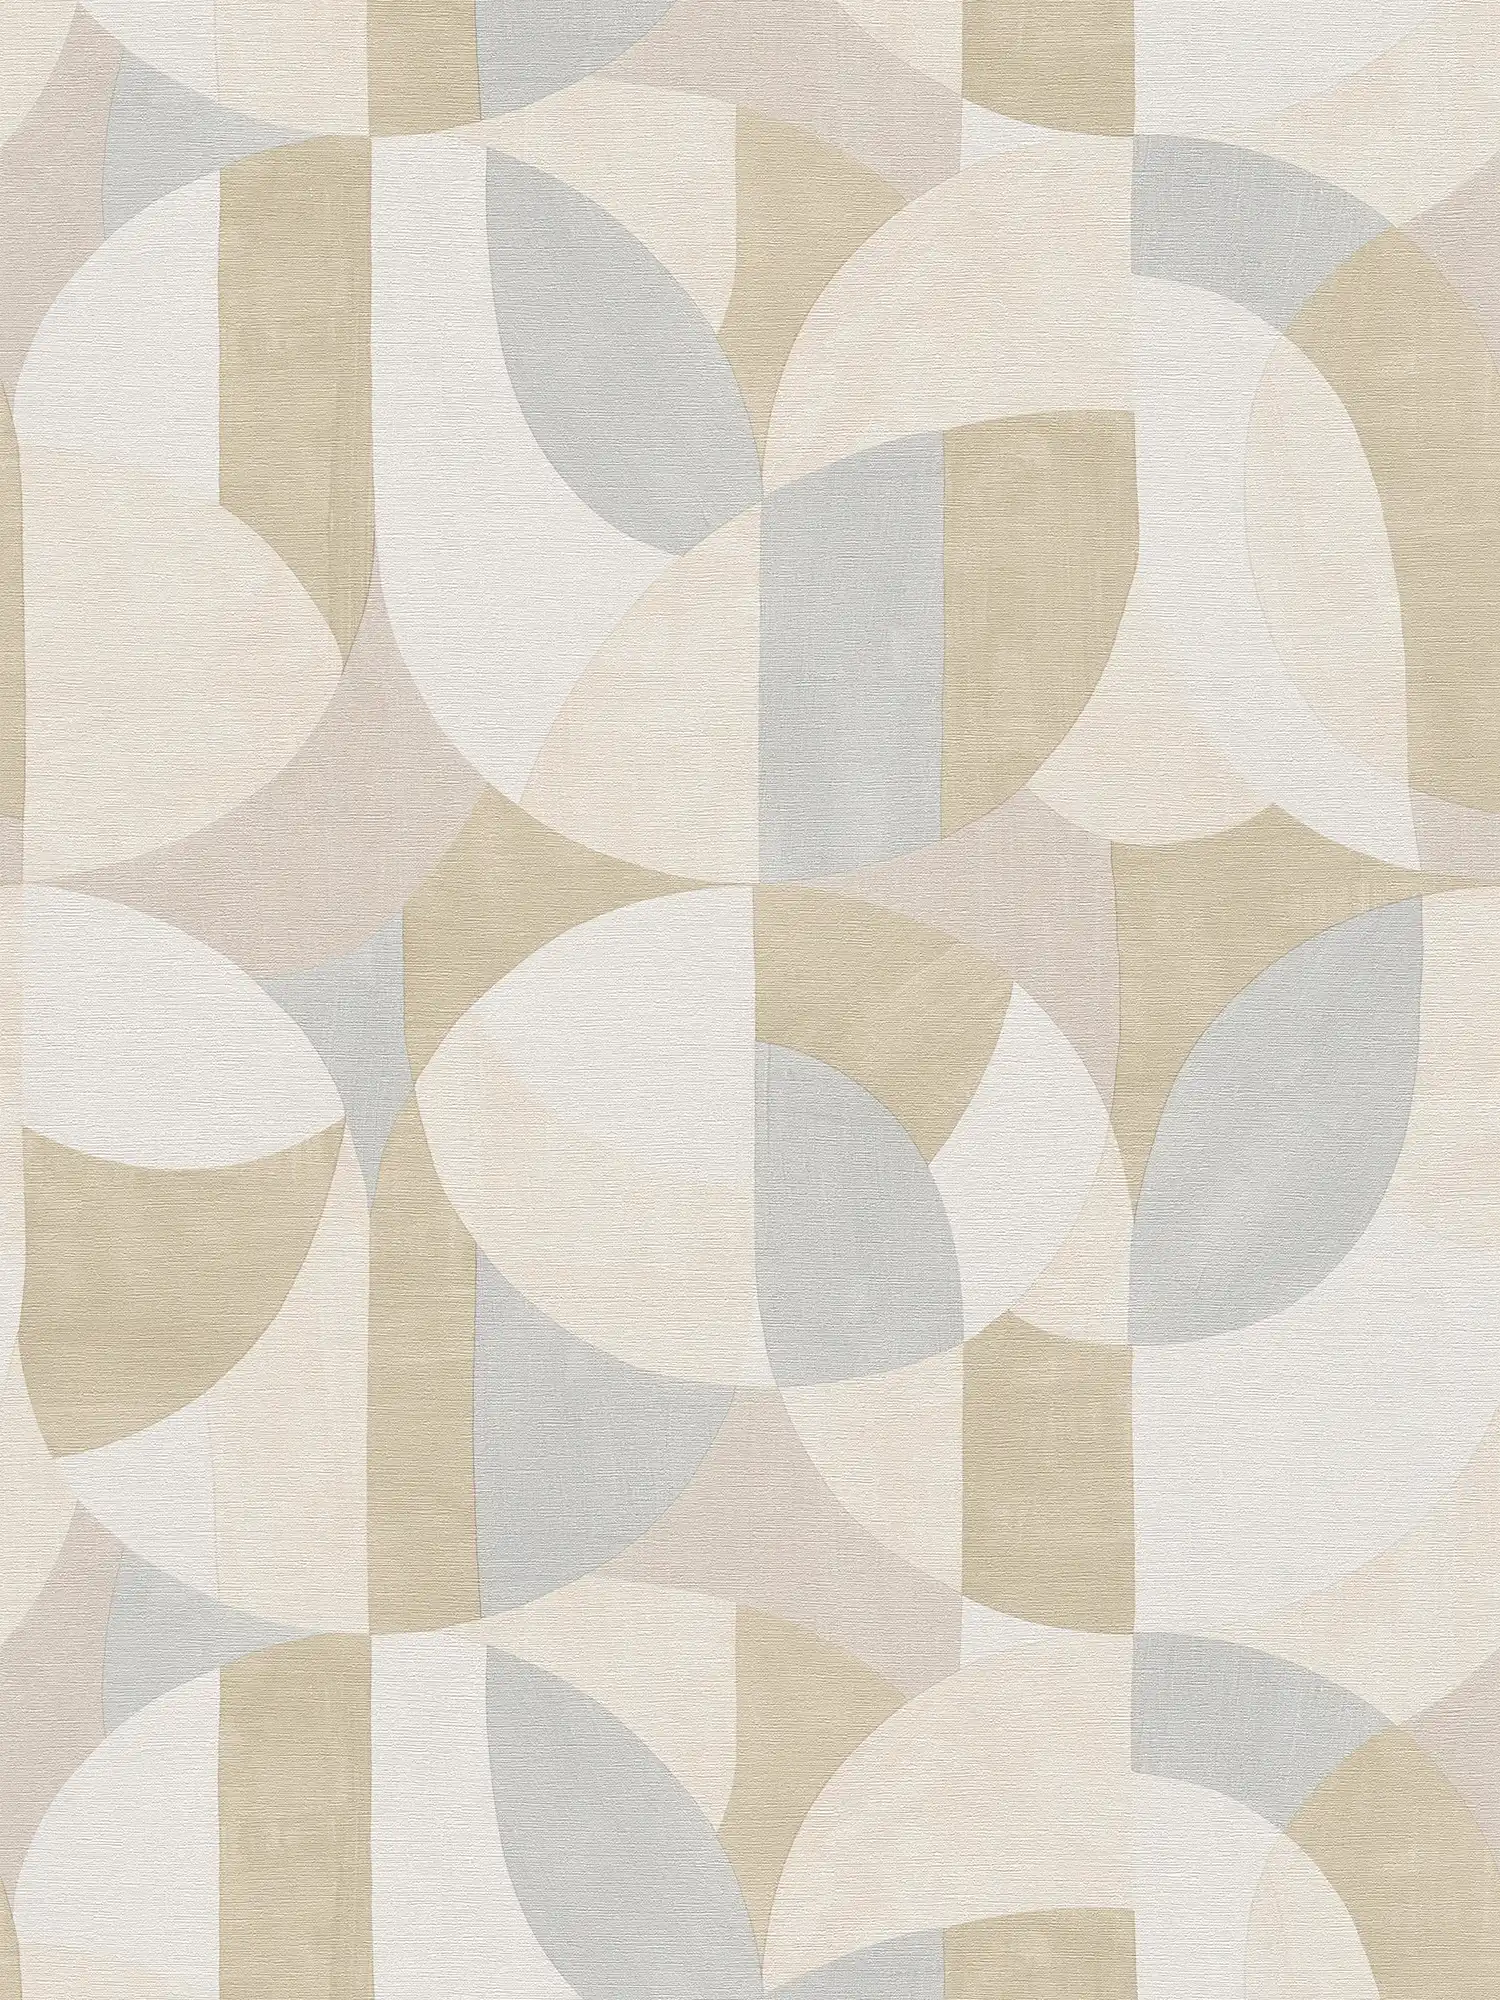         Papel pintado gráfico abstracto de tejido-no tejido en estilo Bauhaus - gris, crema, beige
    